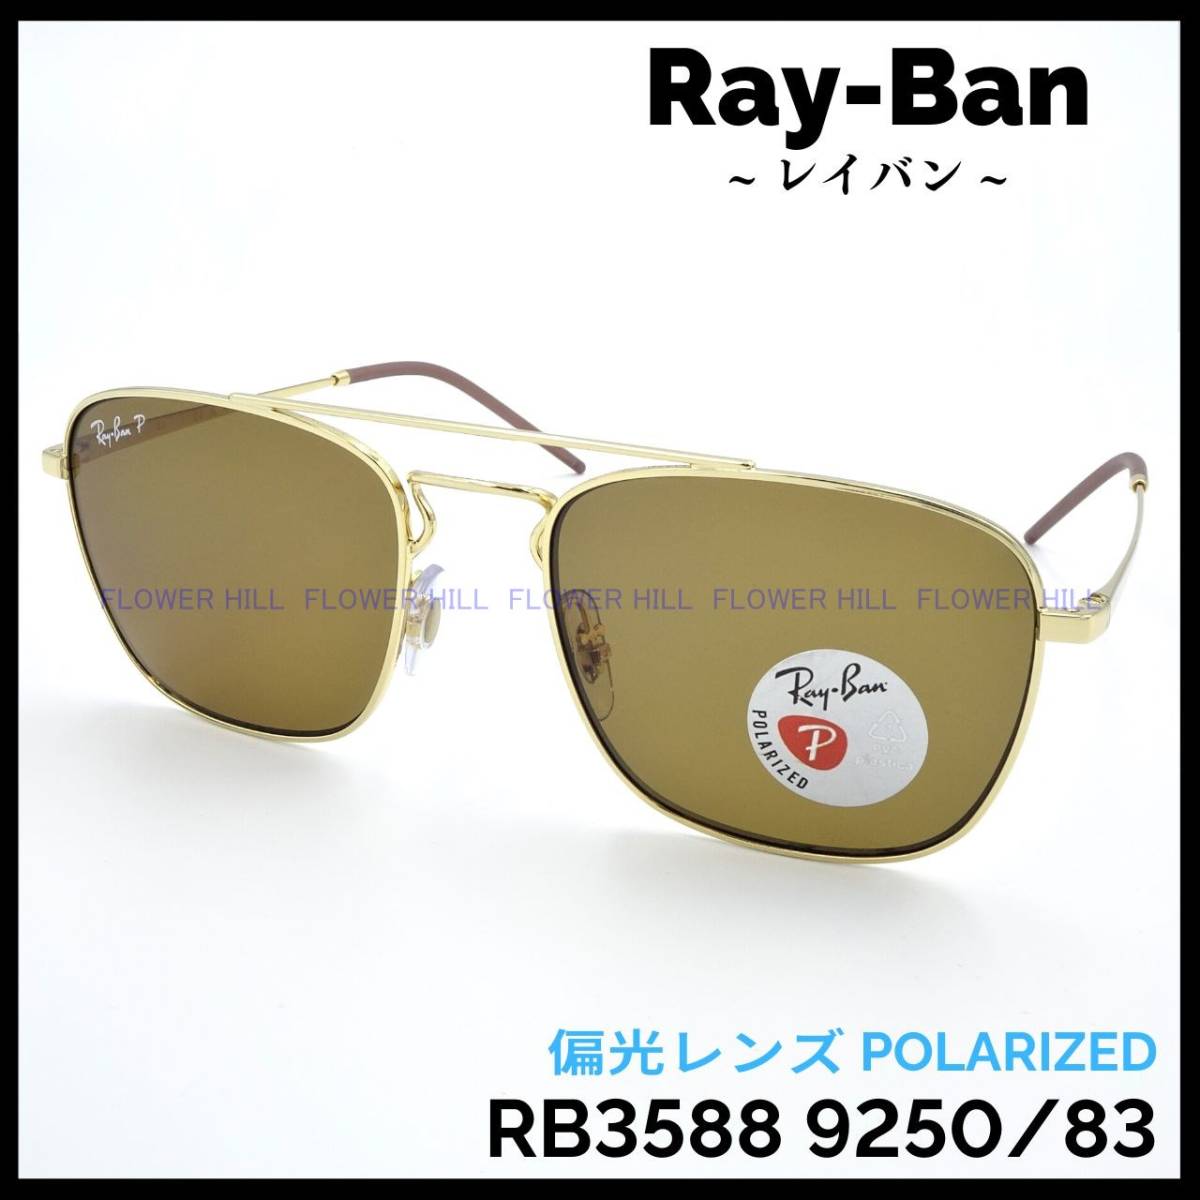 【新品・送料無料】レイバン RayBan 偏光サングラス RB3588 9250/83 ゴールド ダブルブリッジ イタリア製 メンズ レディース